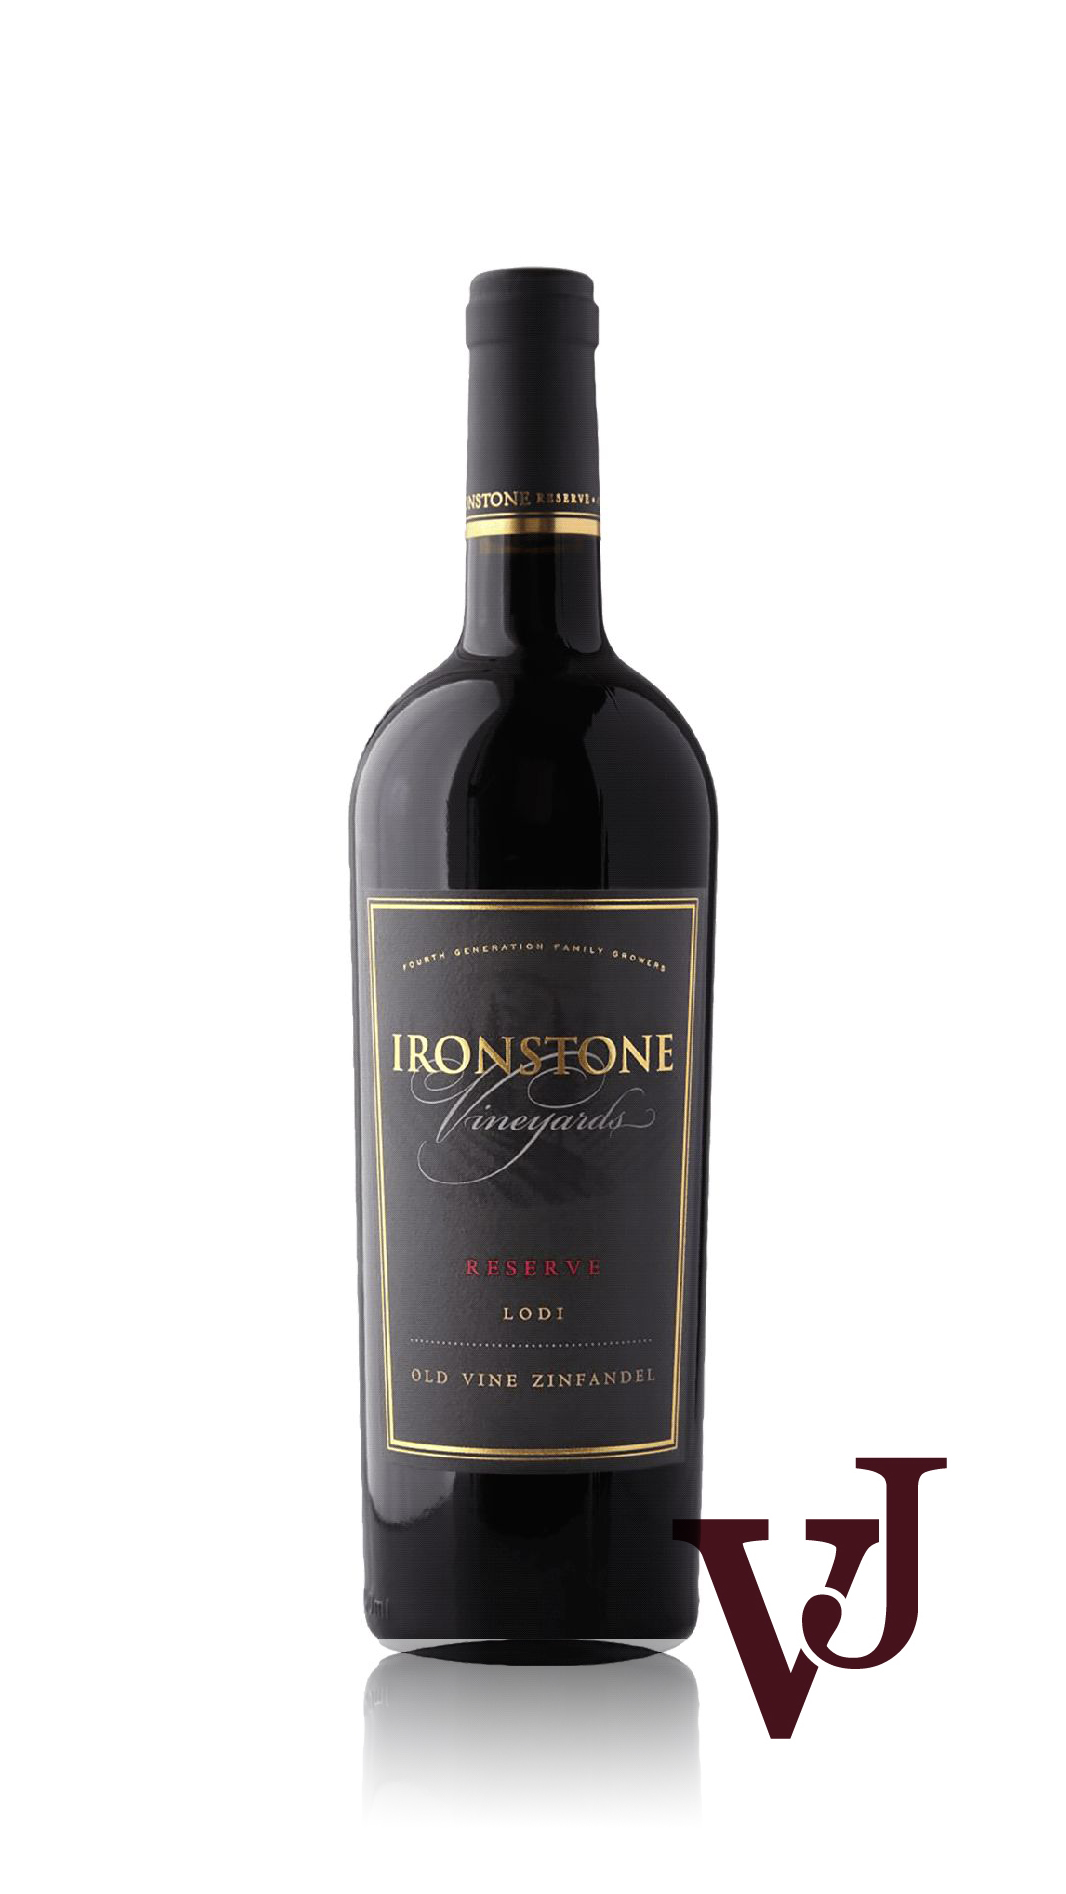 Rött Vin - Ironstone Reserve Zinfandel artikel nummer 7188001 från producenten Ironstone Vineyards från området USA